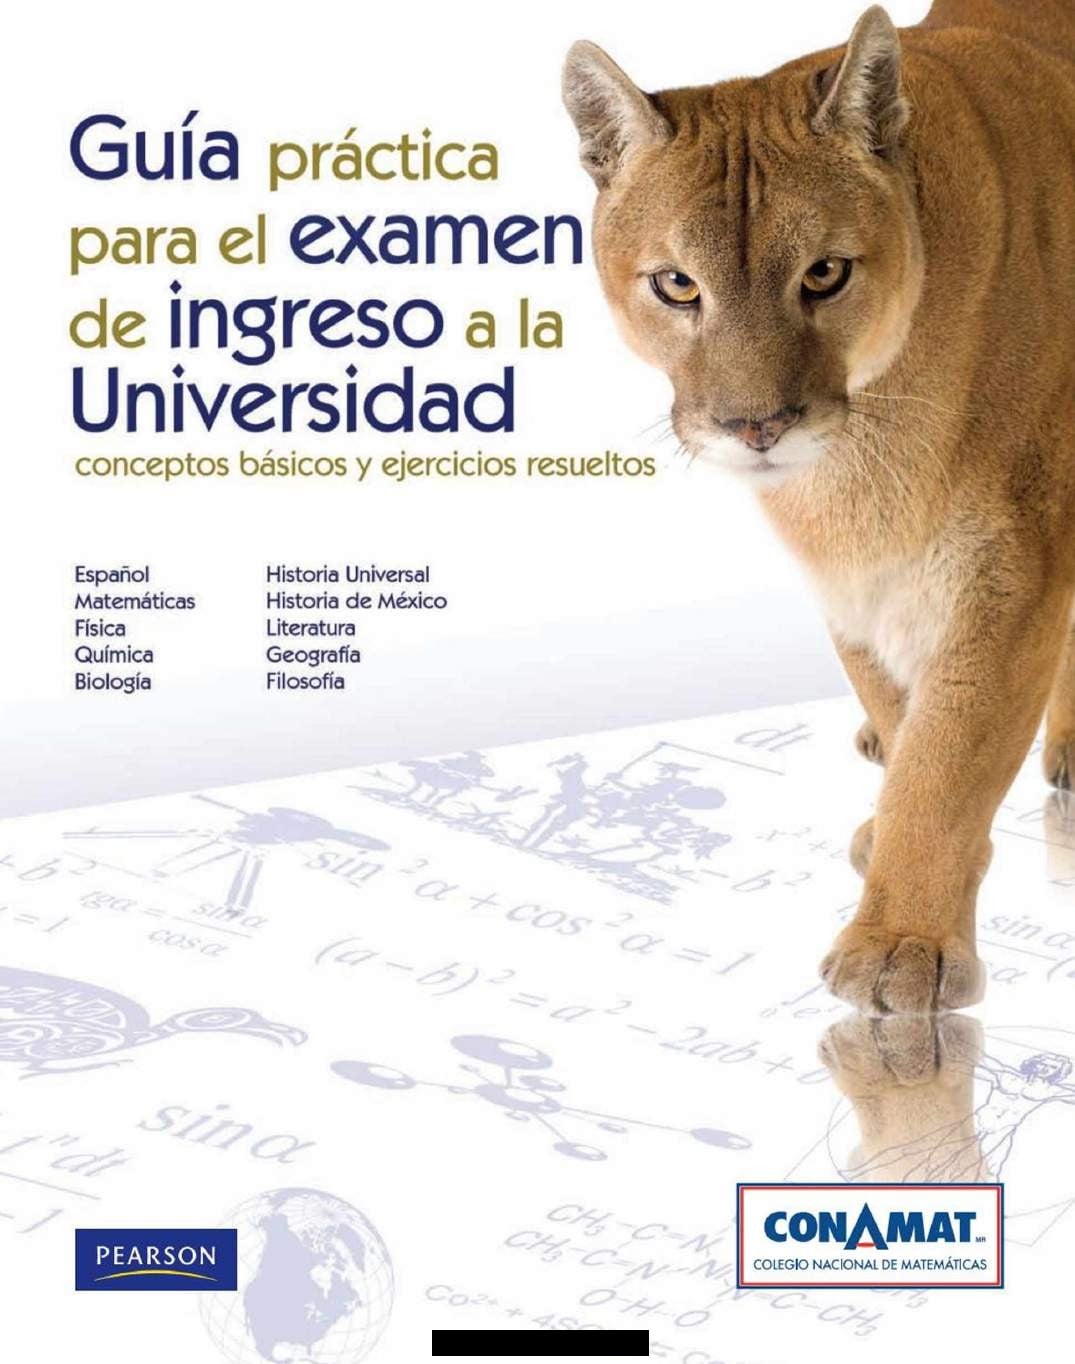 Guia Práctica para el Examen de Ingreso a la Universidad 1 Edición CONAMAT PDF